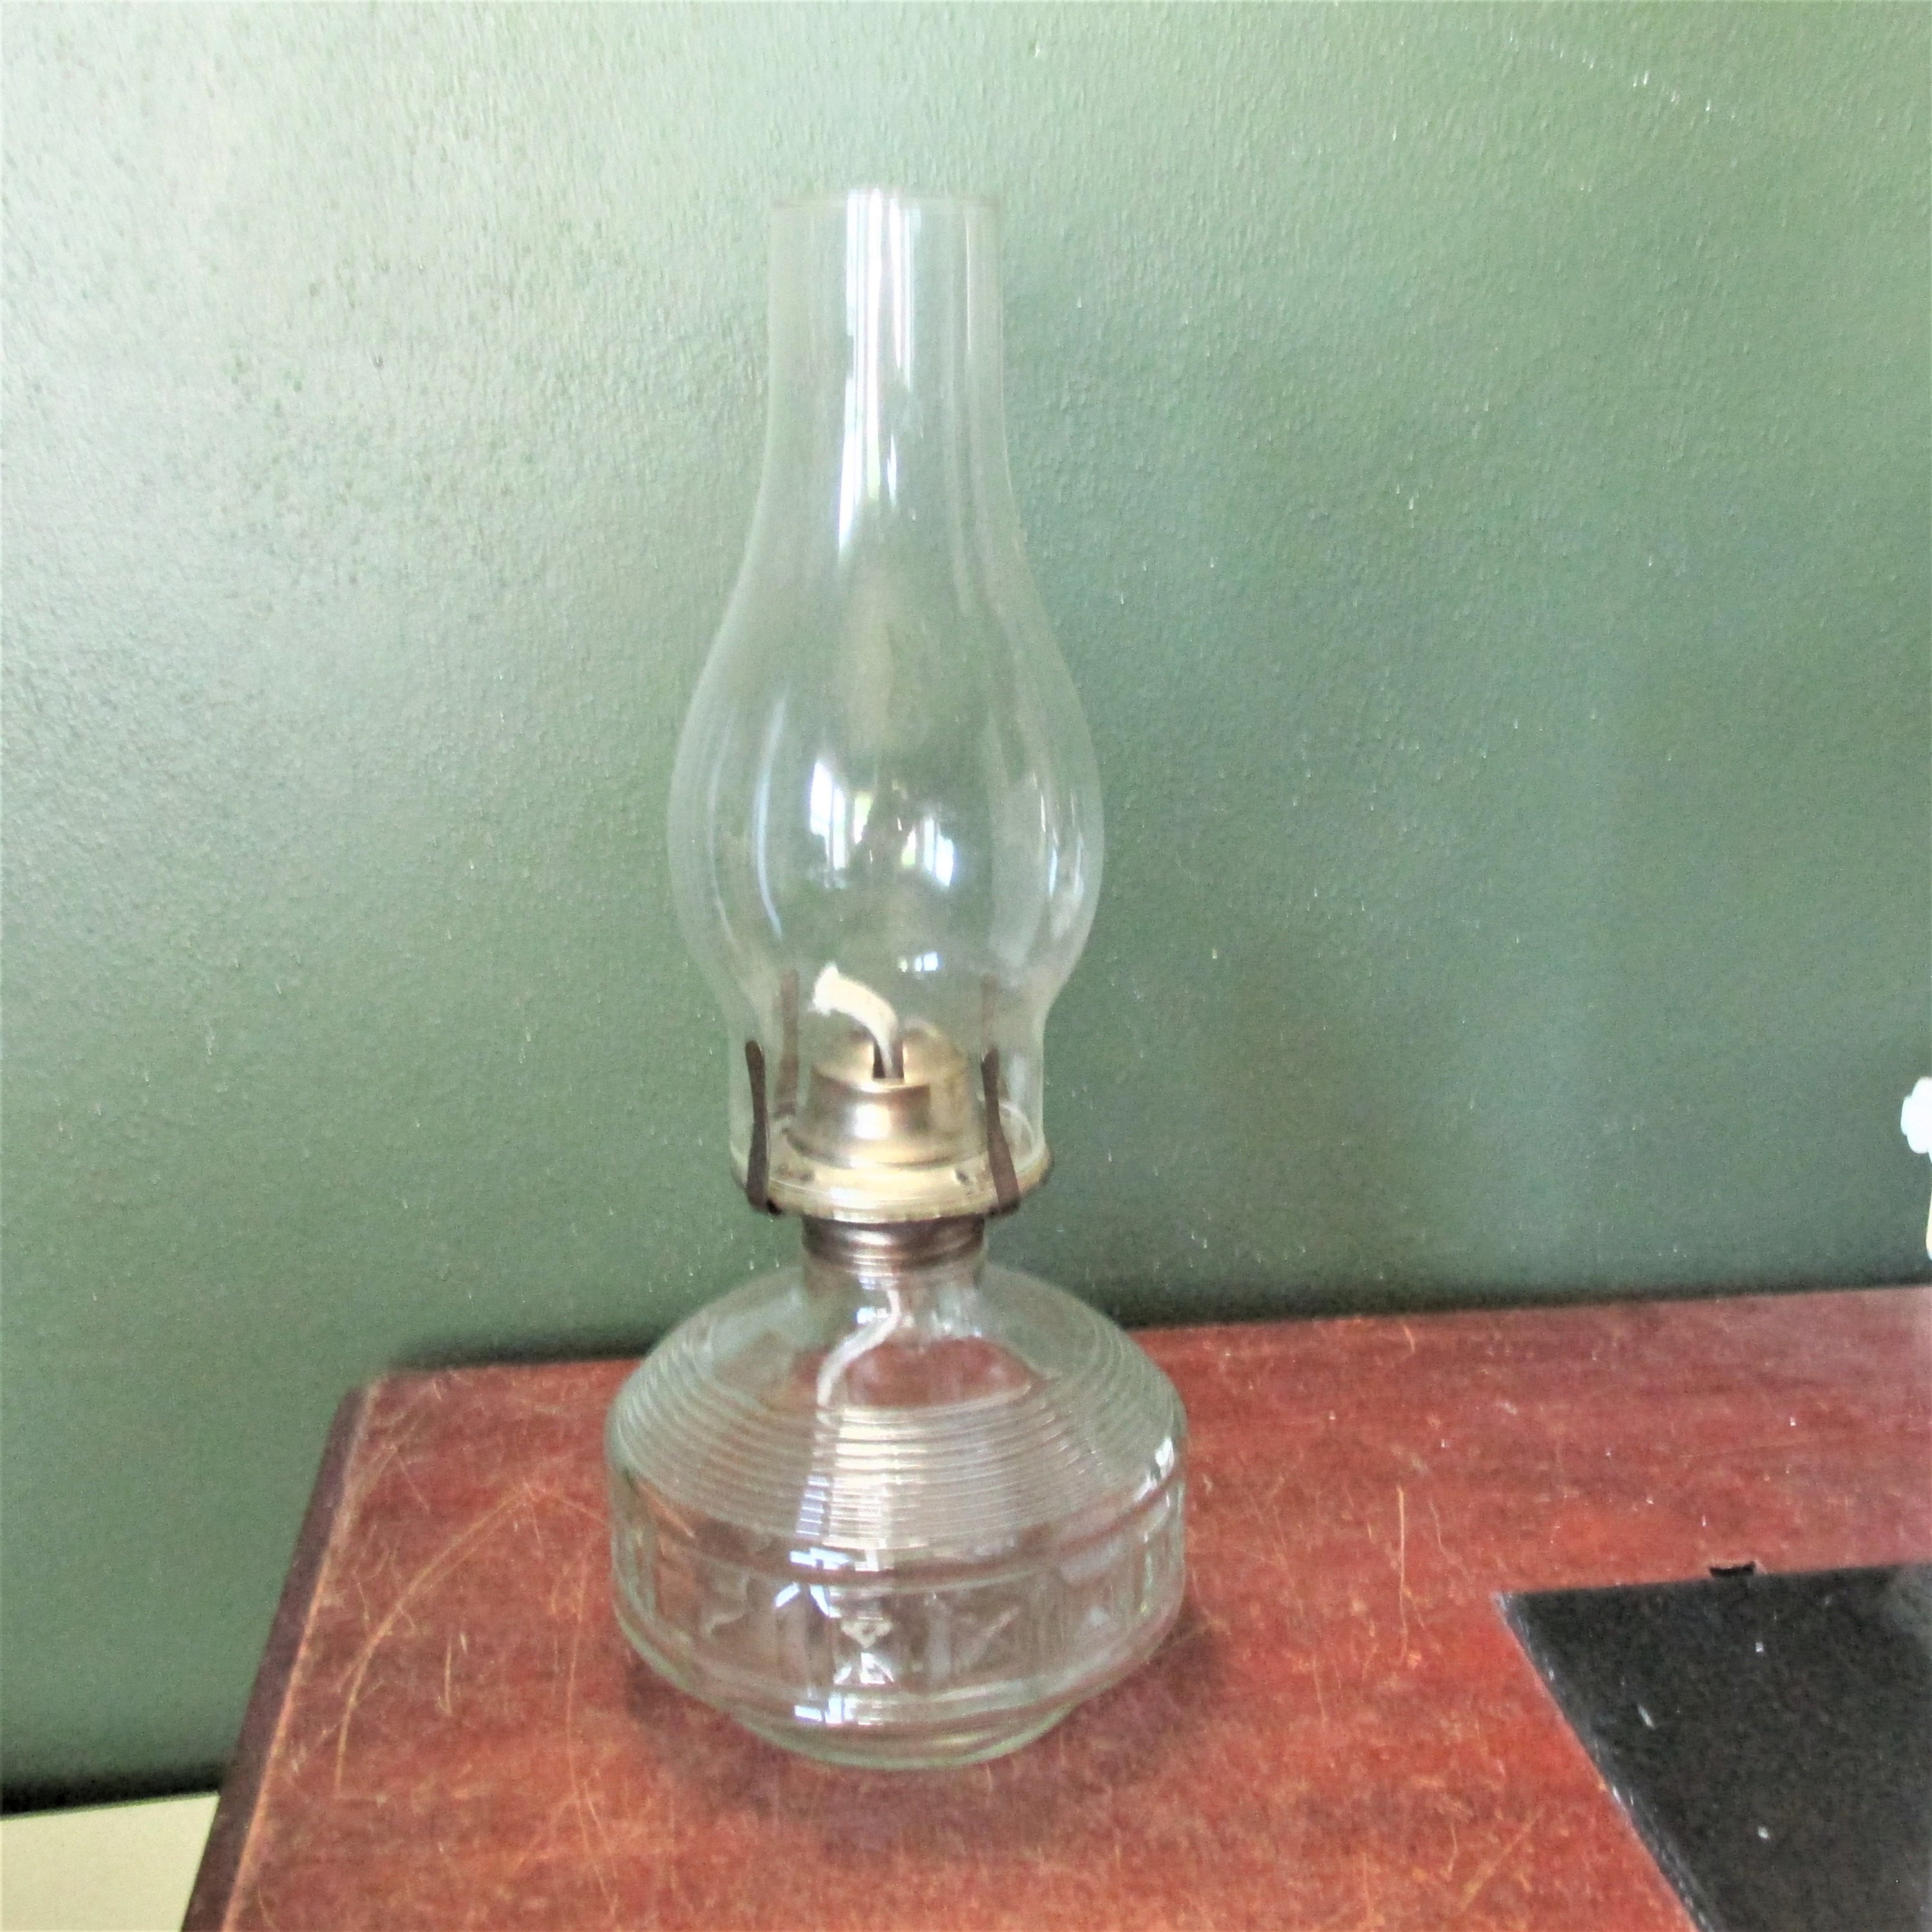 Oil Lamps for Indoor Use, Kerosene Lamp Hurricane Lamp Decorative Lamplight  Chamber Glass Oil Lamp, Translucence Barn Lantern Glass Kerosene Oil Lamp  Lantern for Home Desktop Decor 